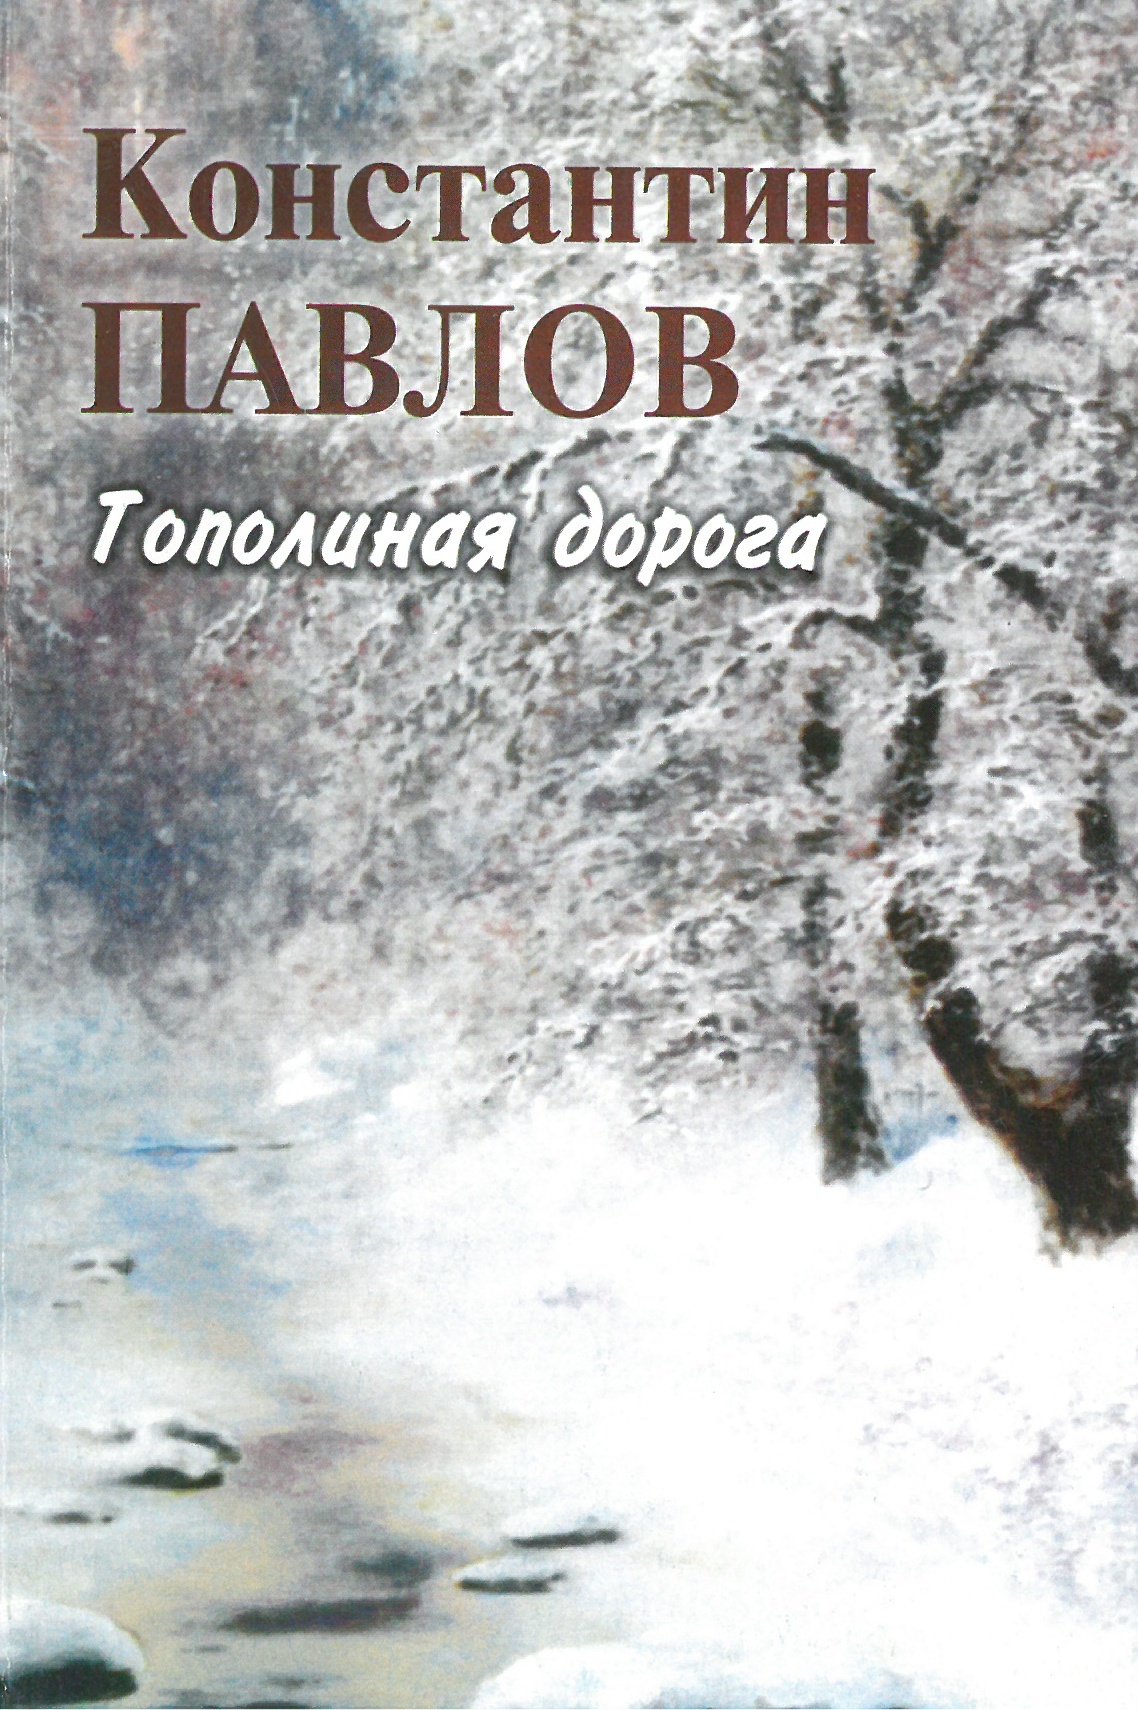 Константин Павлов - Сборник стихов Тополиная дорога (2005 год)